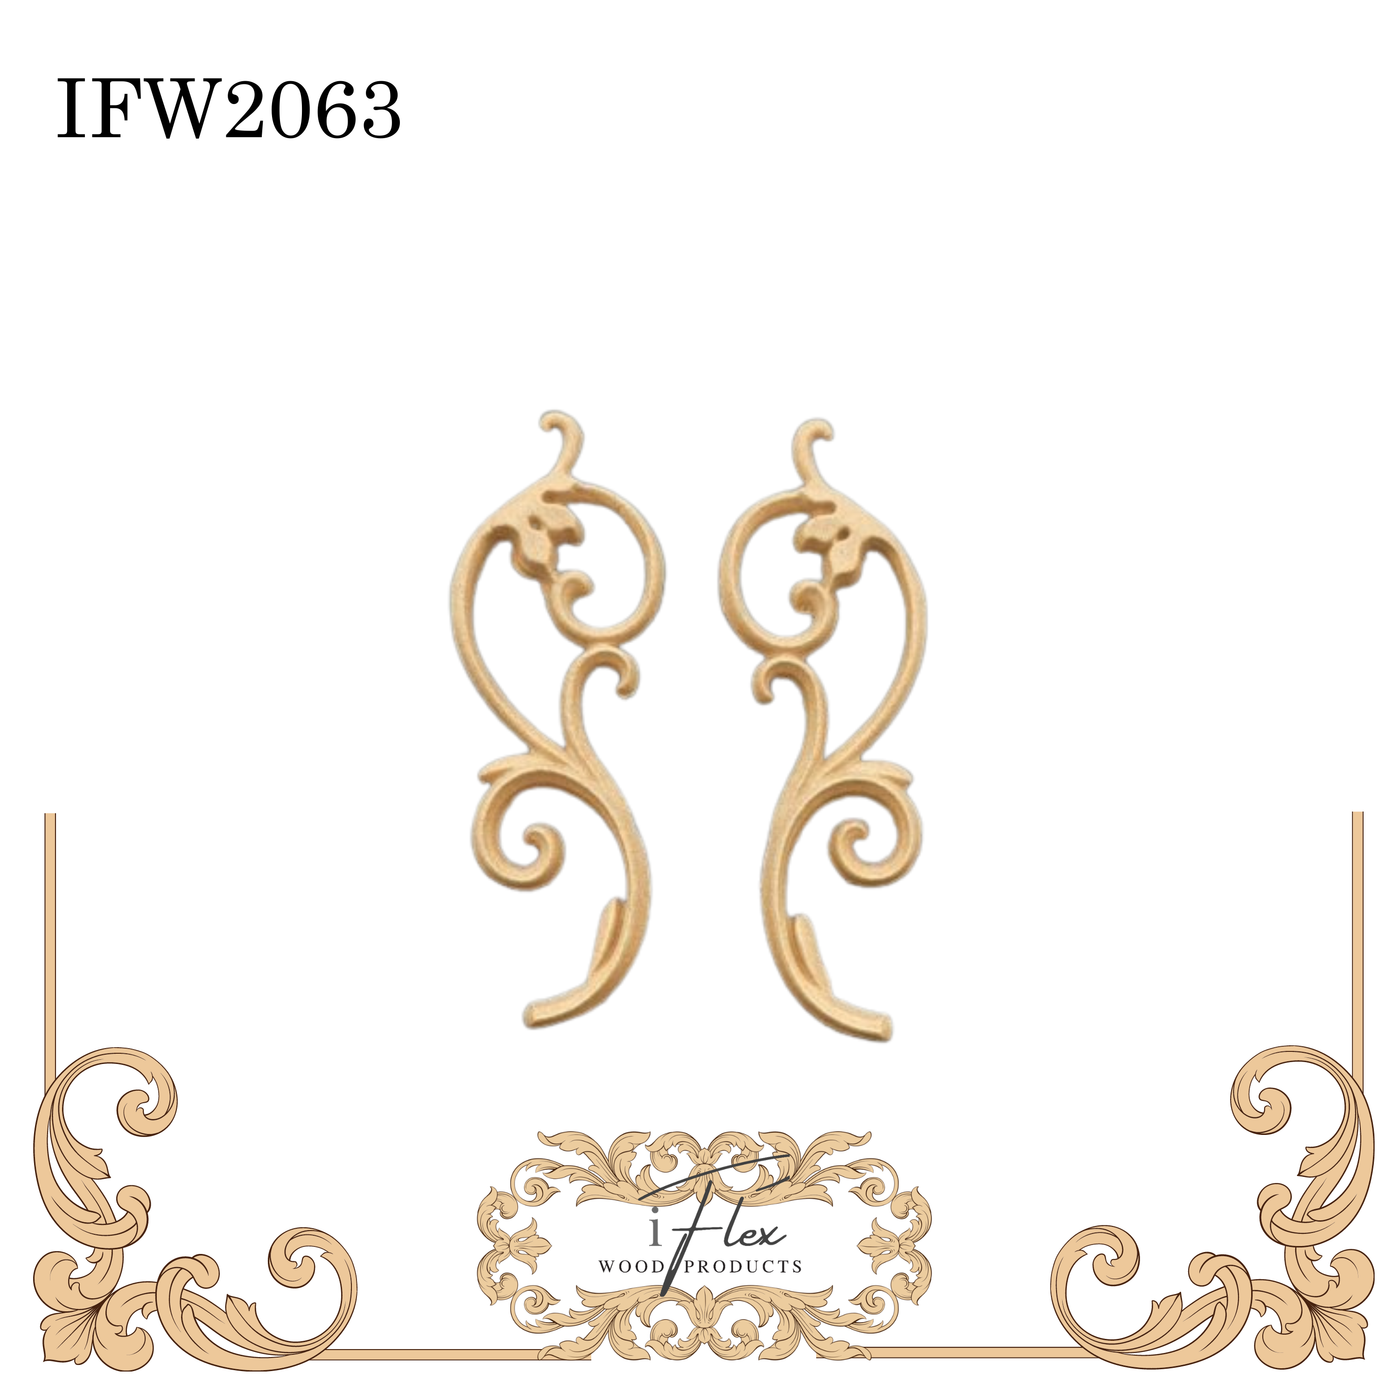 IFW 2063